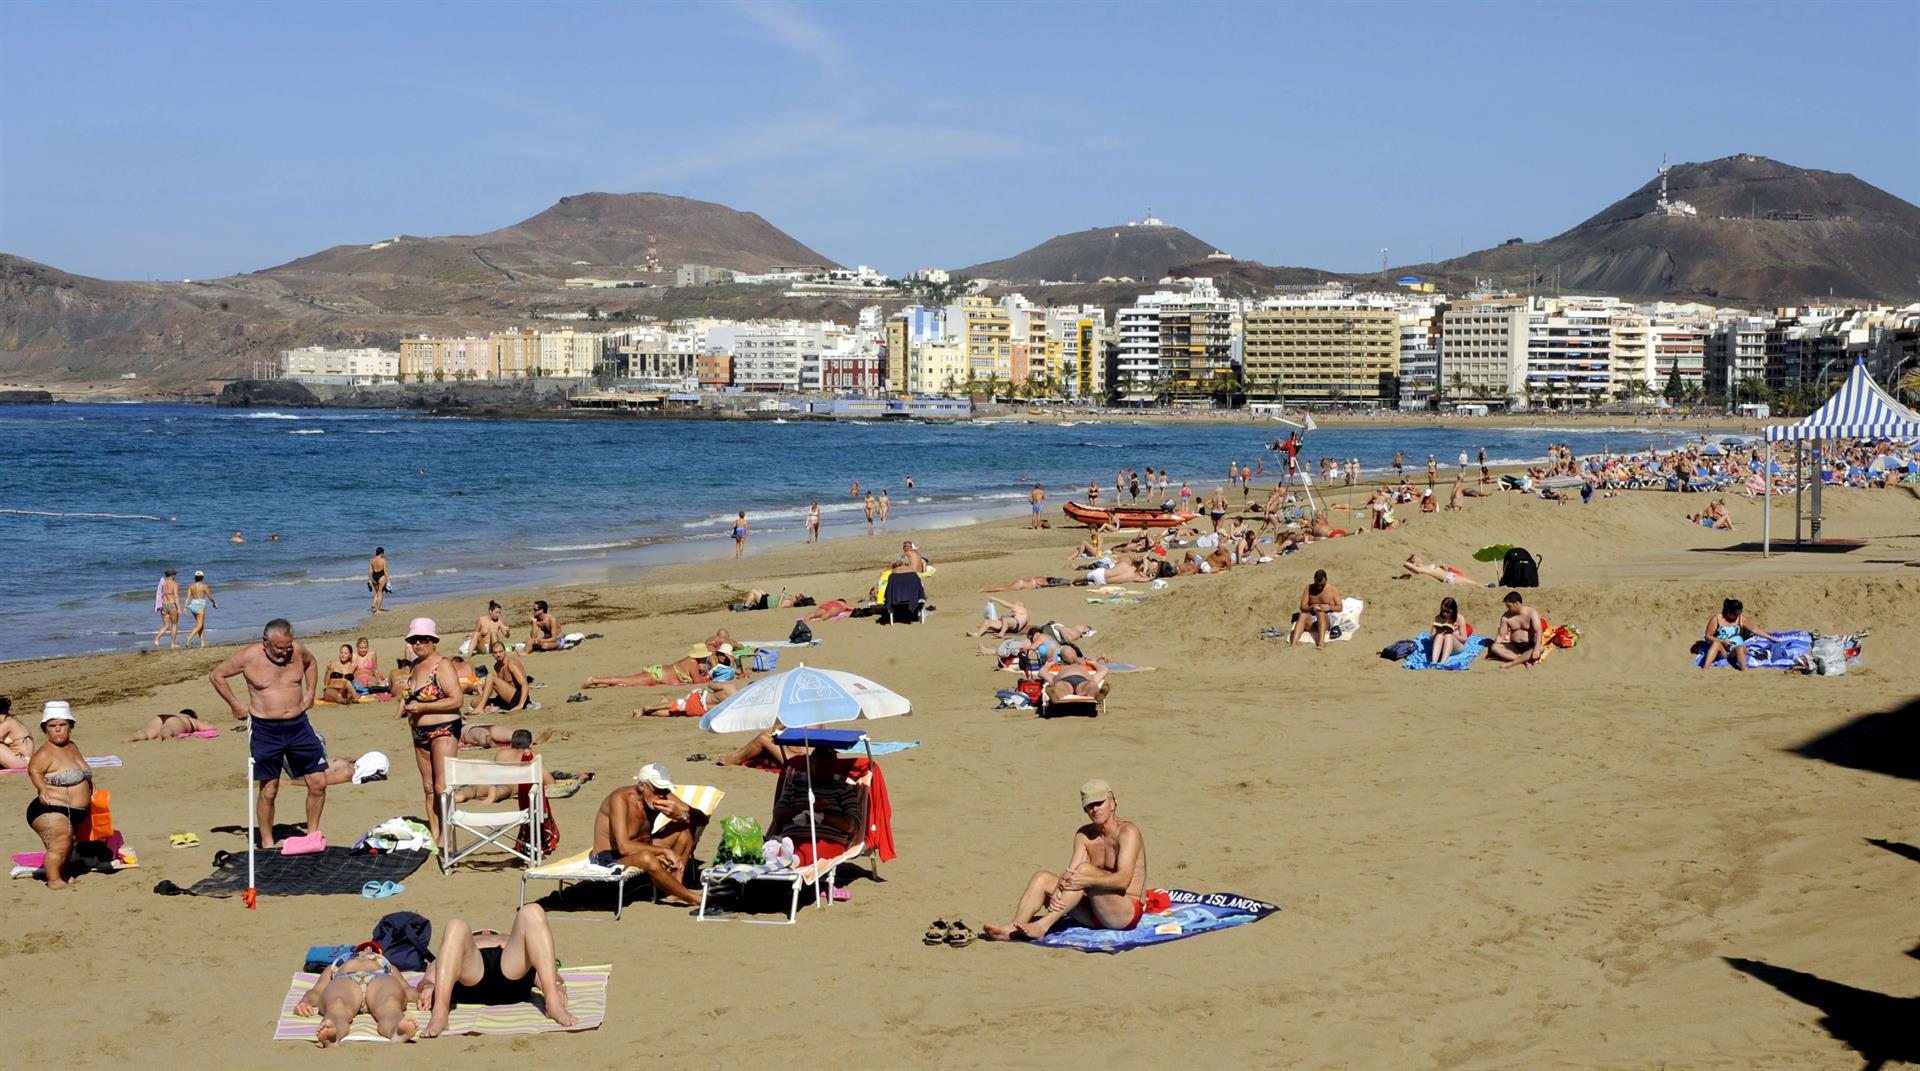 Numerosos turistas y vecinos de Las Palmas de Las Palmas de Gran Canaria disfrutan de un soleado día en la playa de Las Canteras. EFE/Elvira Urquijo A.